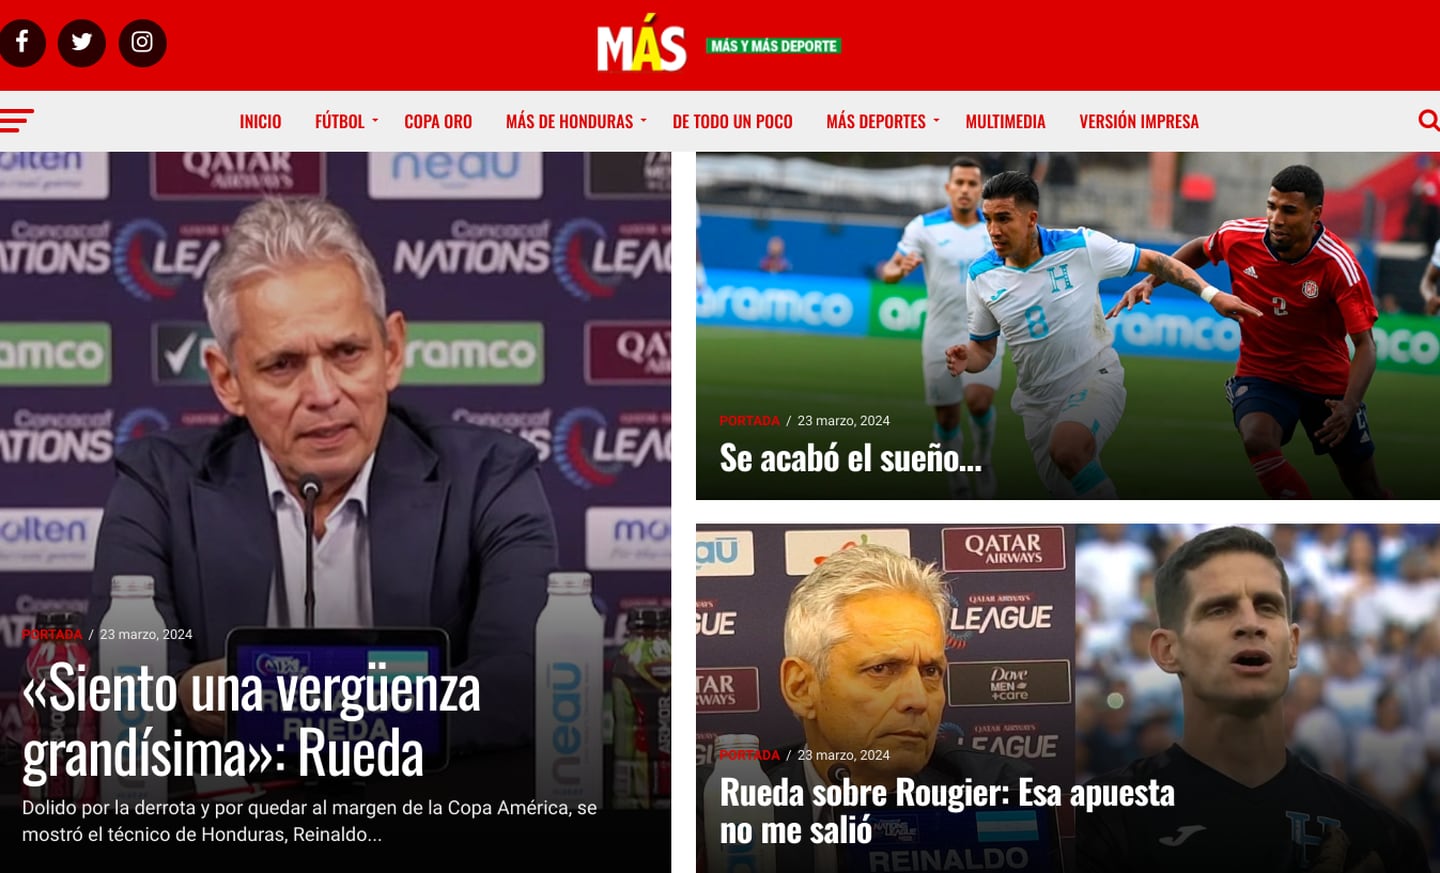 Selección Nacional de Costa Rica
Reacciones Prensa hondureña
23 de marzo del 2023
Tomado de redes sociales